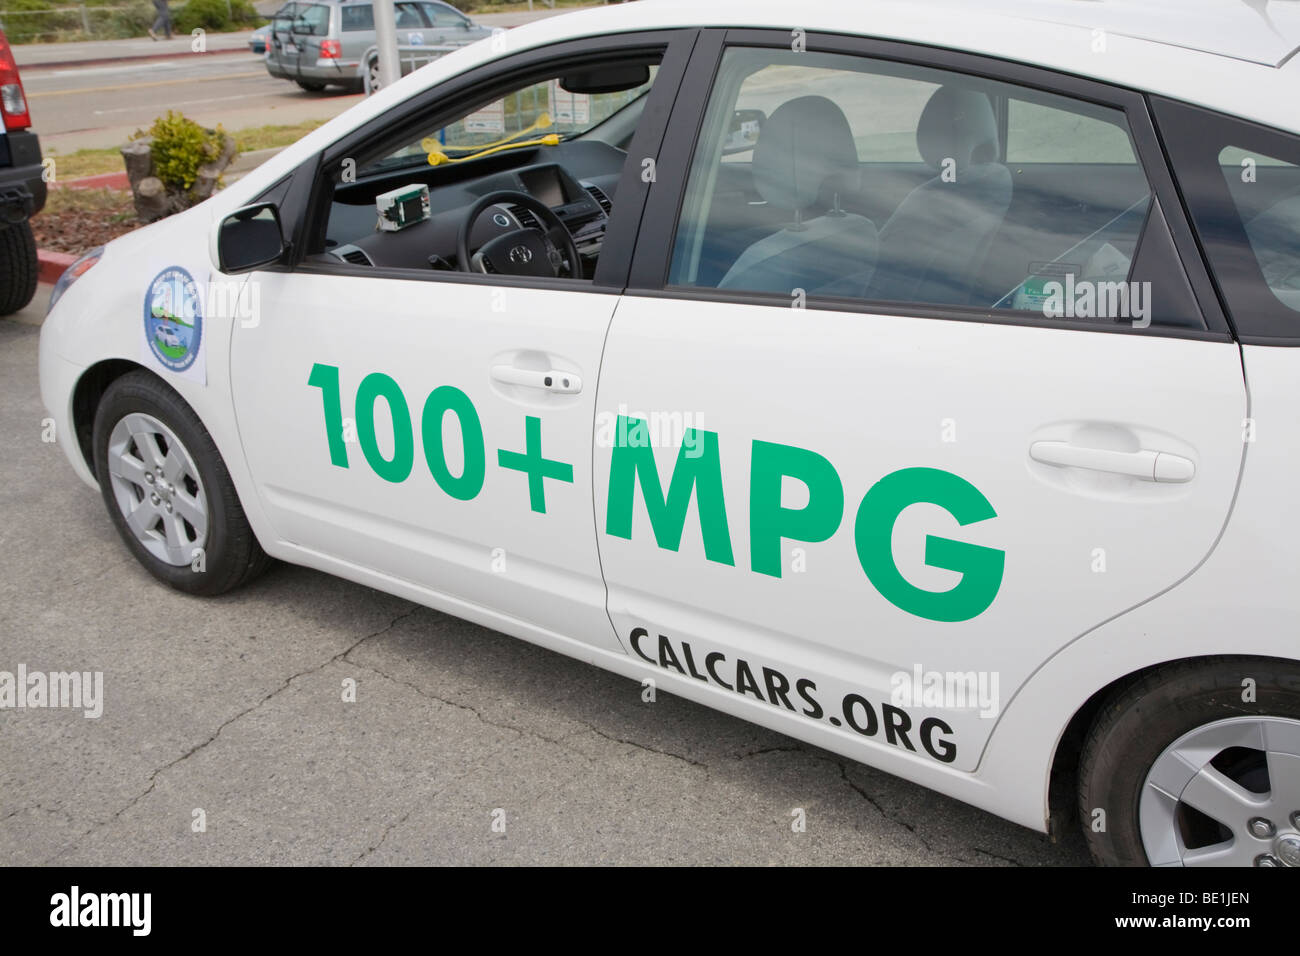 Seitenansicht eines Plug-in Hybrid Toyota Prius Autos mit Aufklebern, die Förderung von 100 Meilen pro Gallone (MPG) und CalCars.Org. Stockfoto